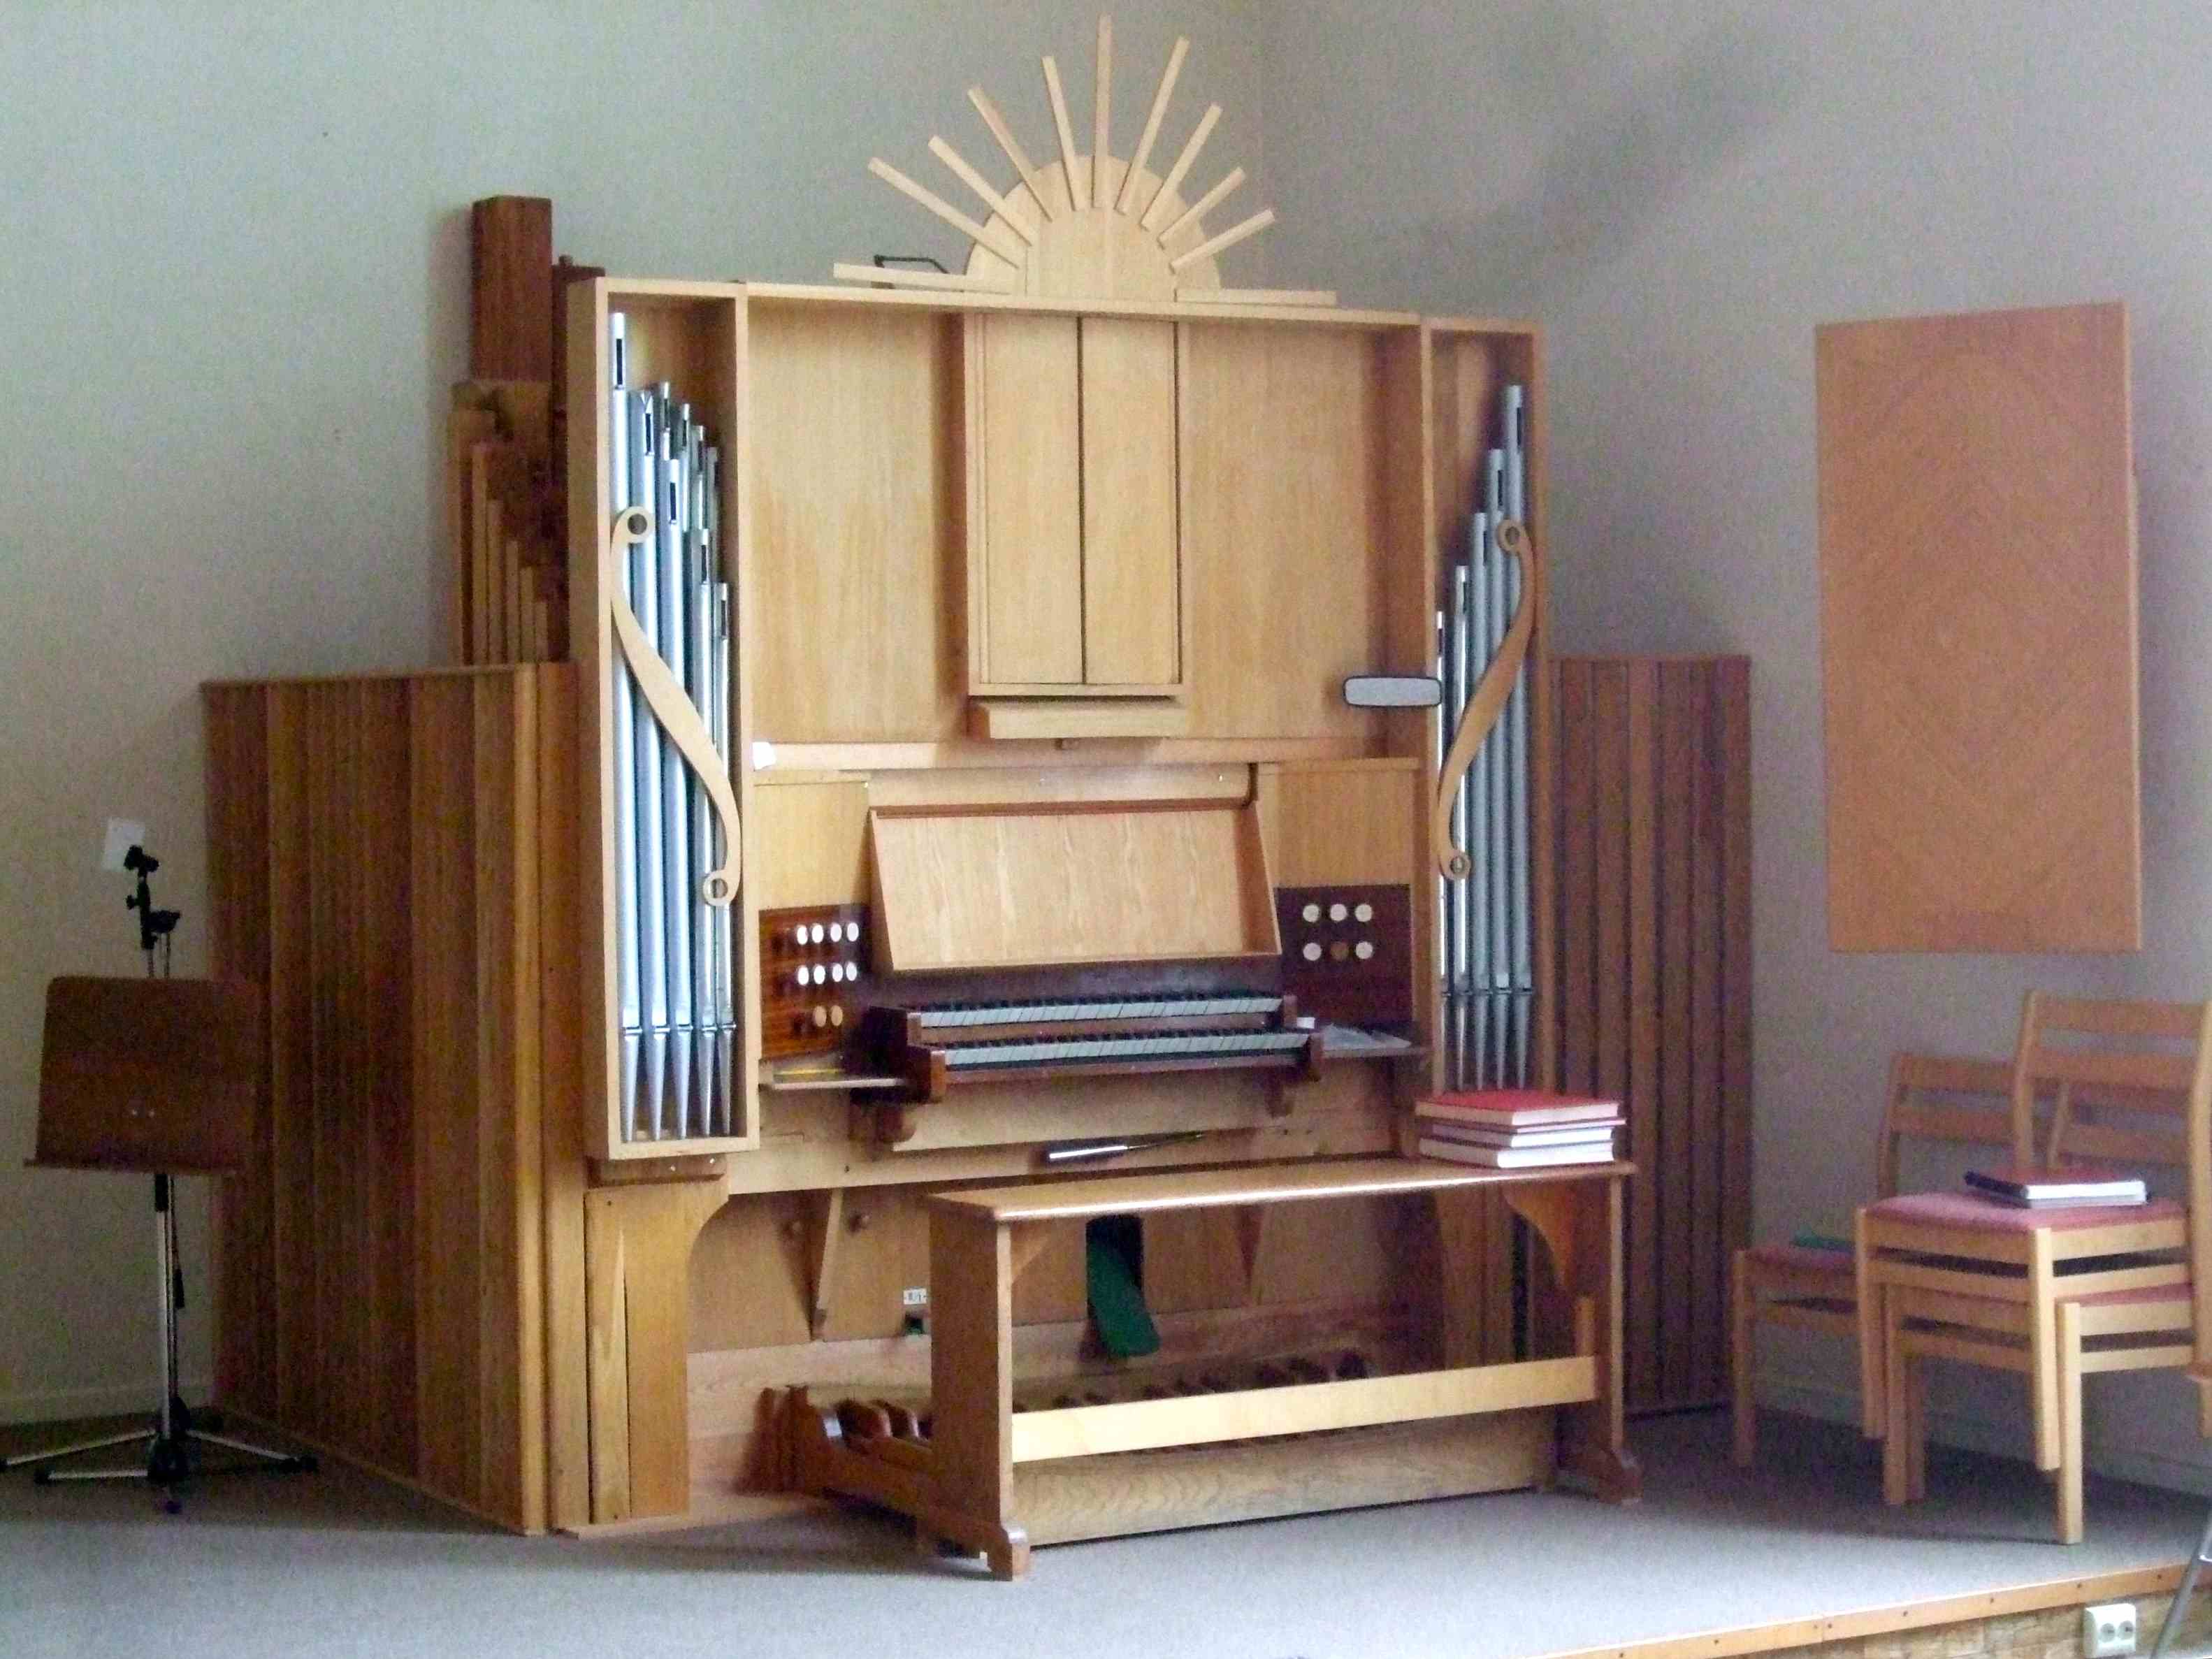 Valbo missionskyrkas orgel ursprungligen bygd av Erik Engberg som var organist i Torsåker. Orgeln stod i hans hem, och överläts 1995 av efterlevande till Missionskyrkan i Valbo. Fasaden senare försedd m bl a \